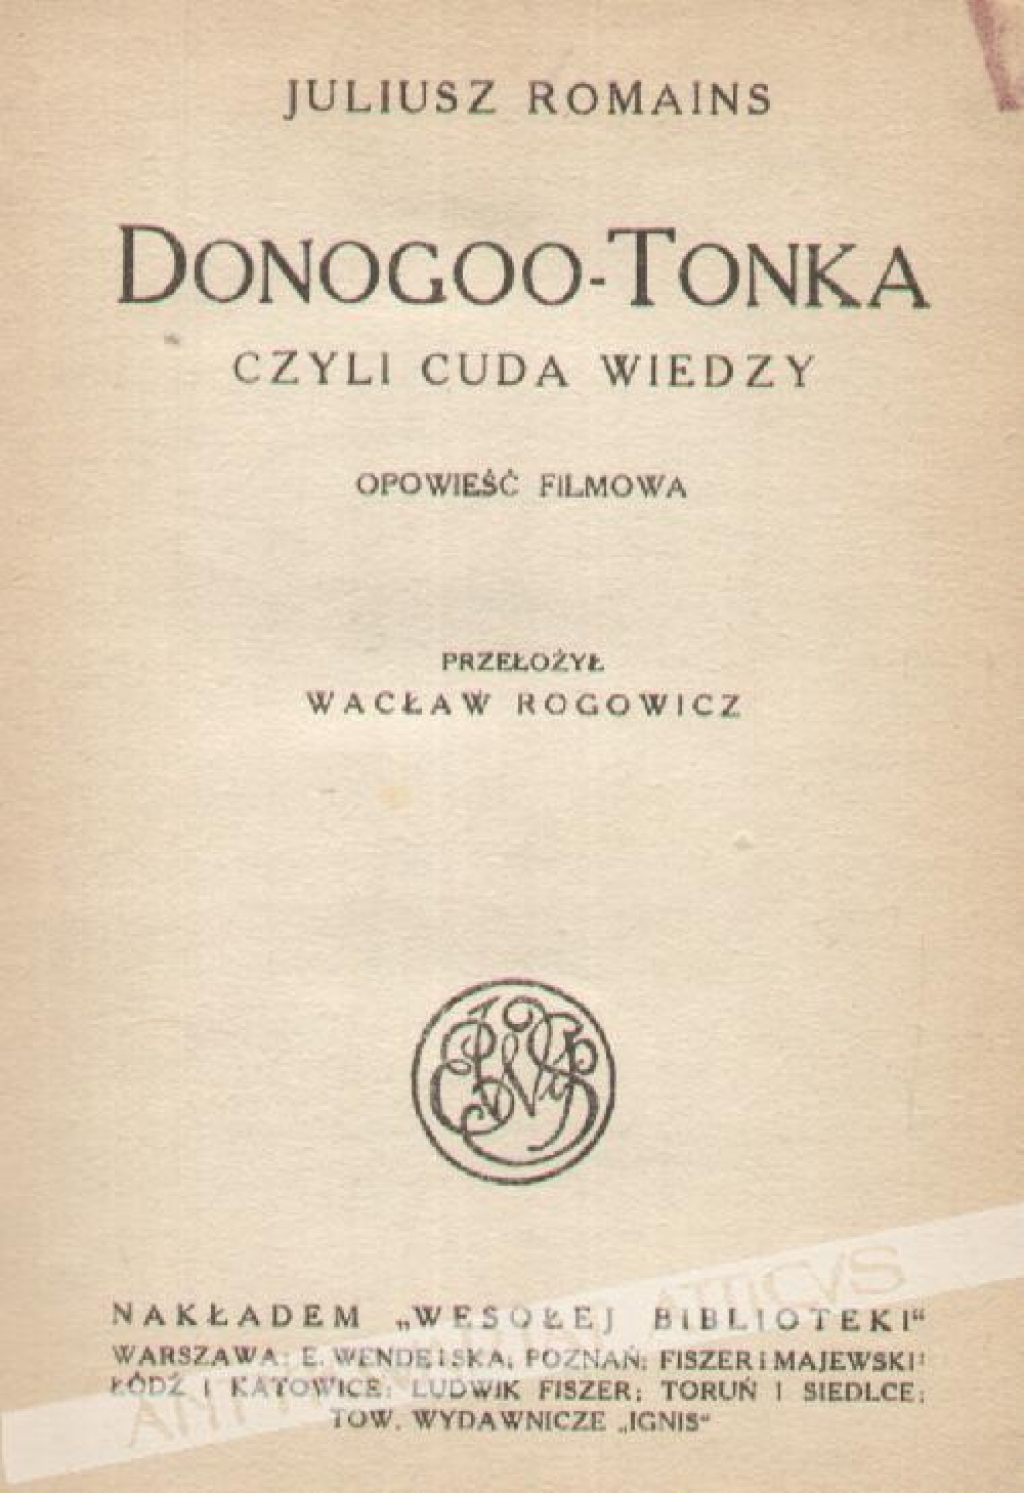 Donogoo-Tonka czyli cuda wiedzy. Opowieść filmowa